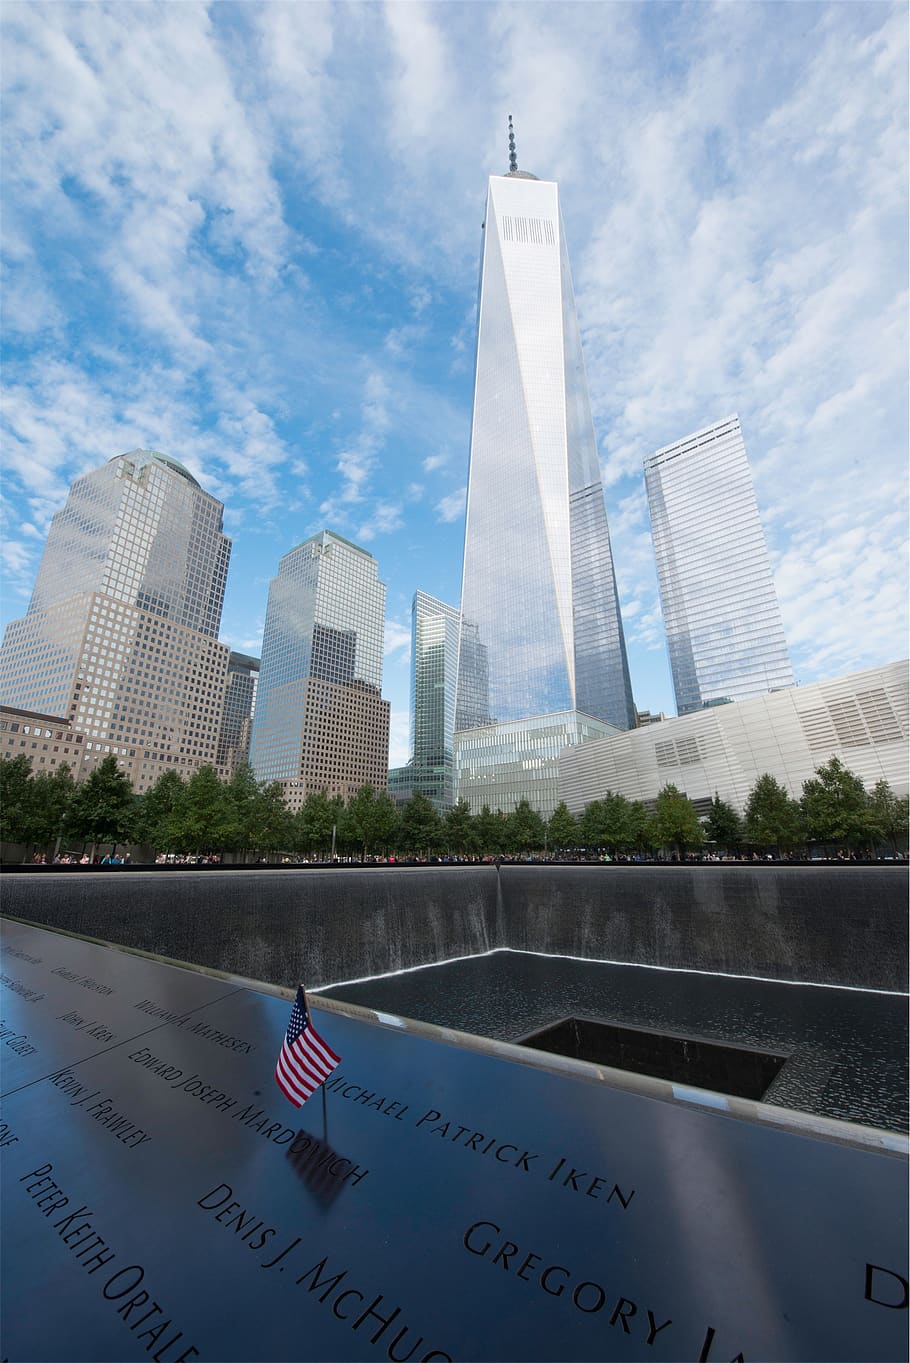 911, Nova York, cidade, torres gêmeas, NYC, americana, bandeira, EUA, edifícios, arquitetura